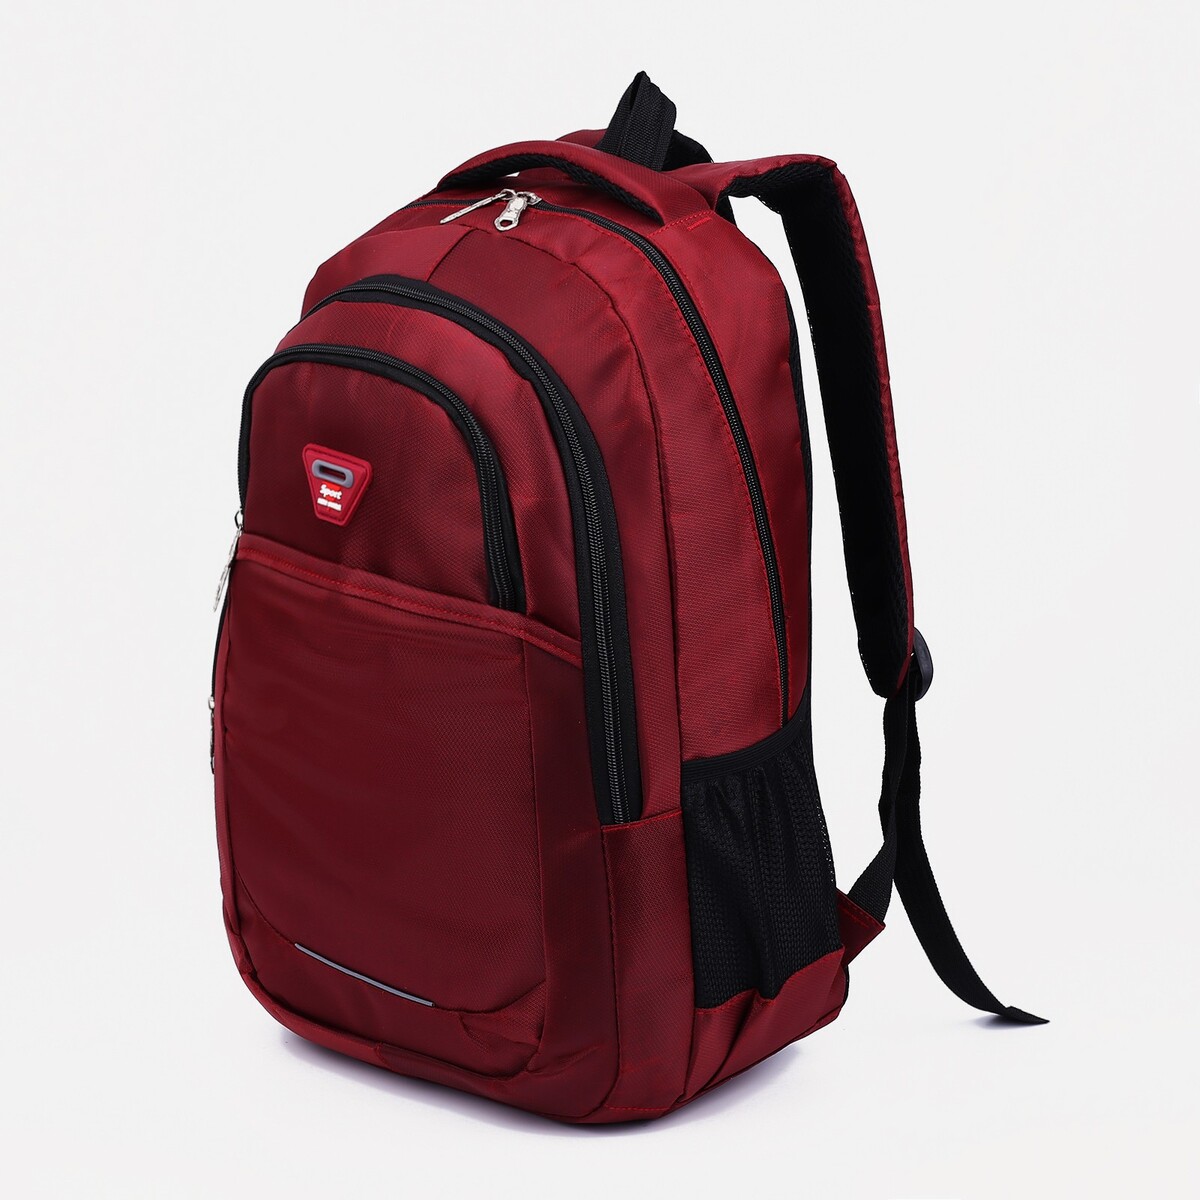 Рюкзак молодежный из текстиля, 2 отдела, 2 кармана, цвет бордовый рюкзак молодежный из текстиля 4 кармана бордовый